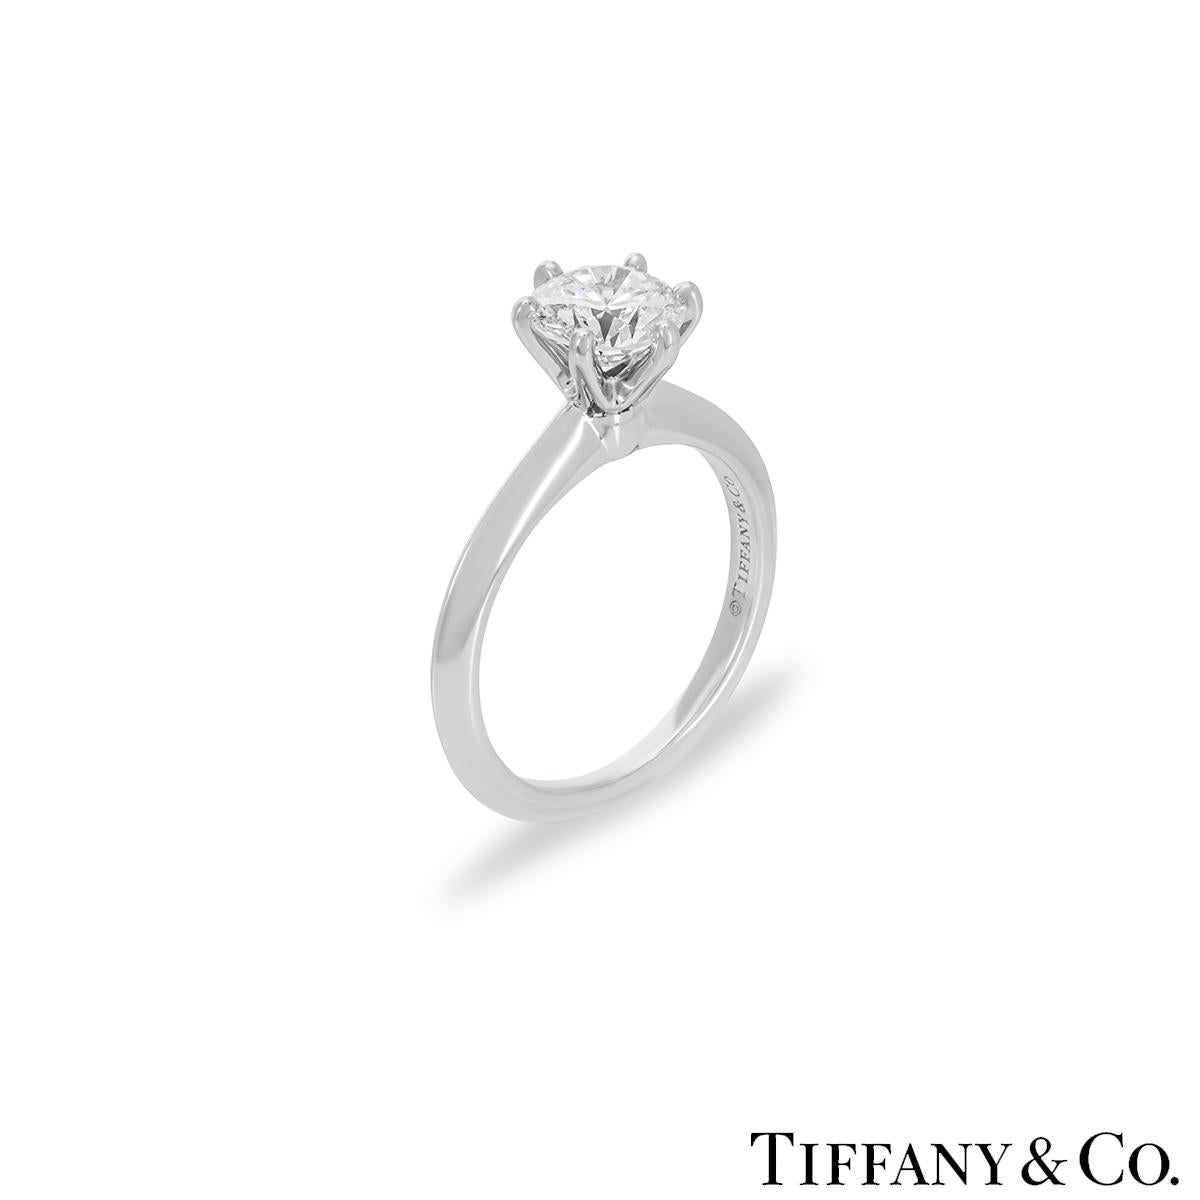 Ein schöner Platin-Diamantring von Tiffany & Co. aus der Kollektion Setting. Der Ring besteht aus einem runden Diamanten mit Brillantschliff in einer 6-Krallen-Fassung mit einem Gewicht von 1,08ct, Farbe I und Reinheit VS1. Der Diamant erhält in